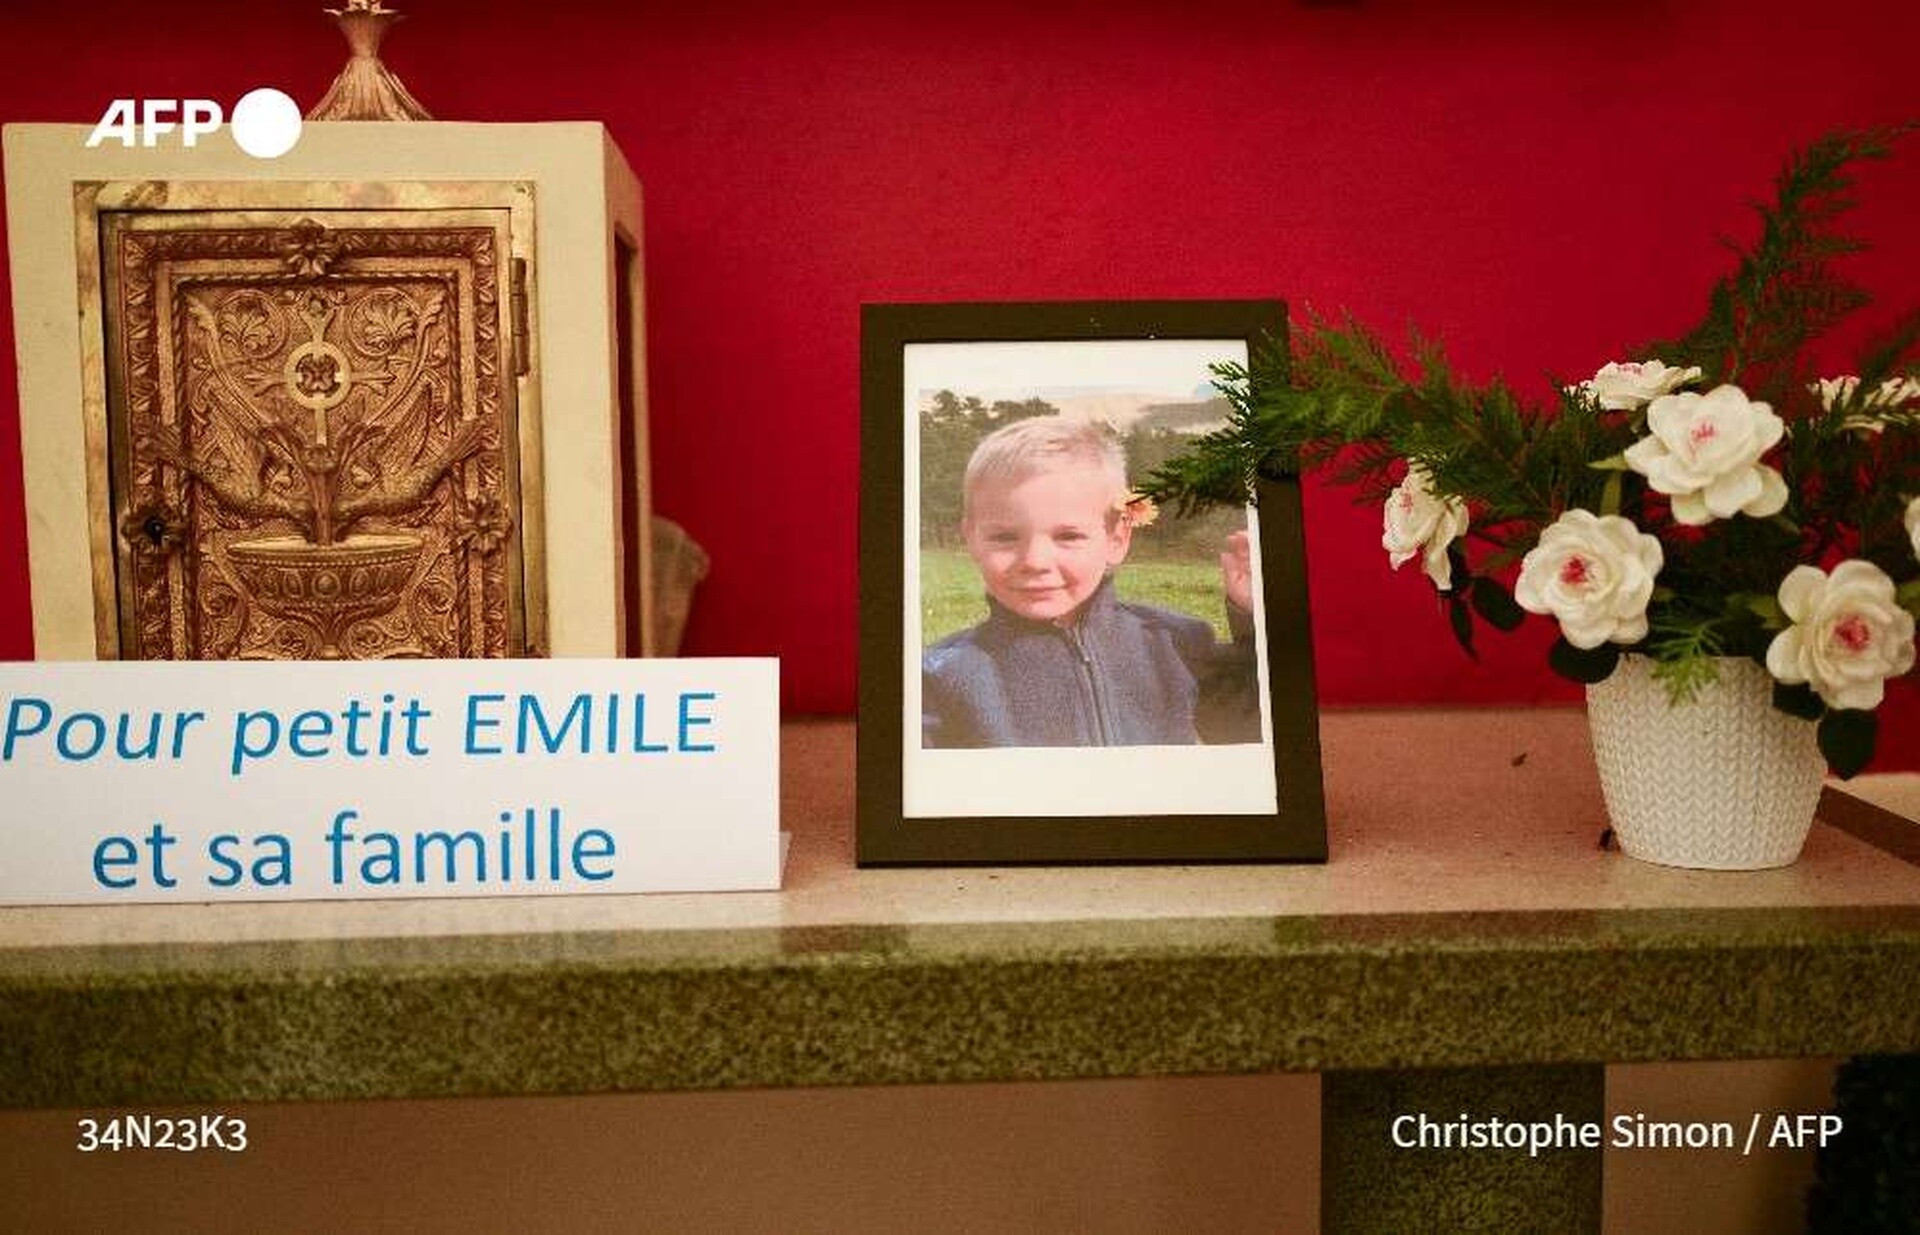 Γαλλία: Βρέθηκαν οστά που φέρονται να ανήκουν στον μικρό Εμίλ που αγνοούνταν επί 9 μήνες